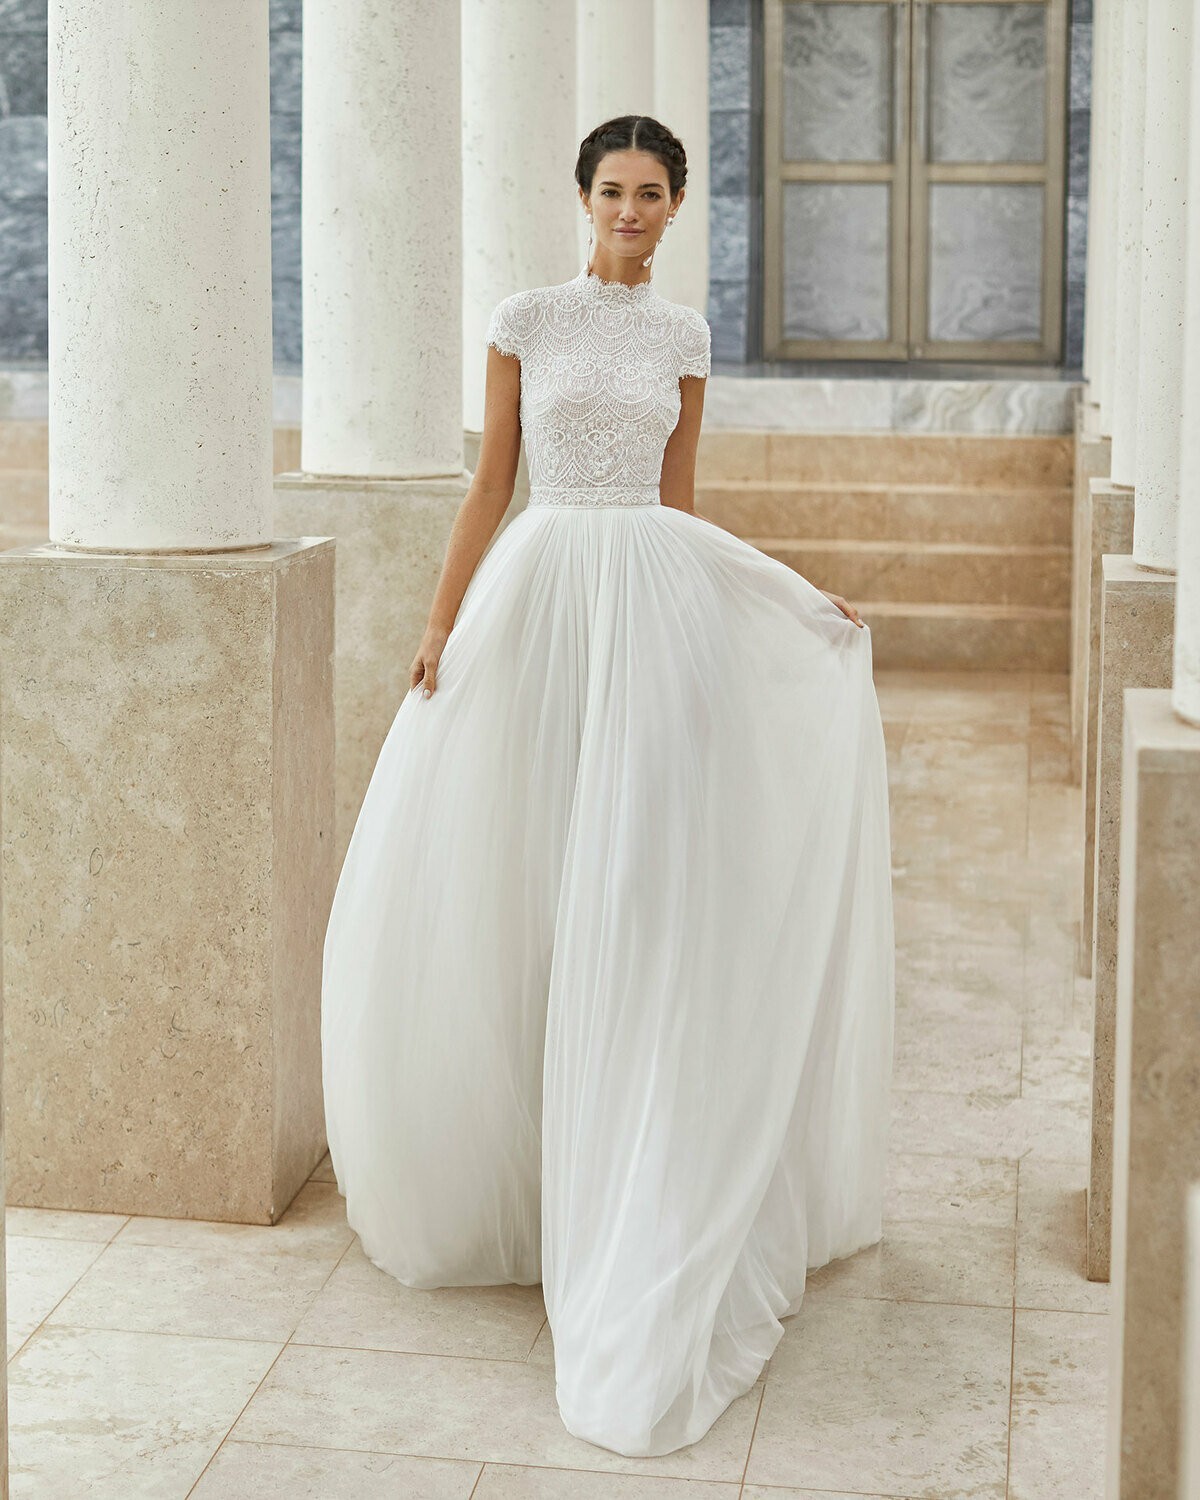 SALINA - abito da sposa collezione 2020 - Rosa Clarà Couture